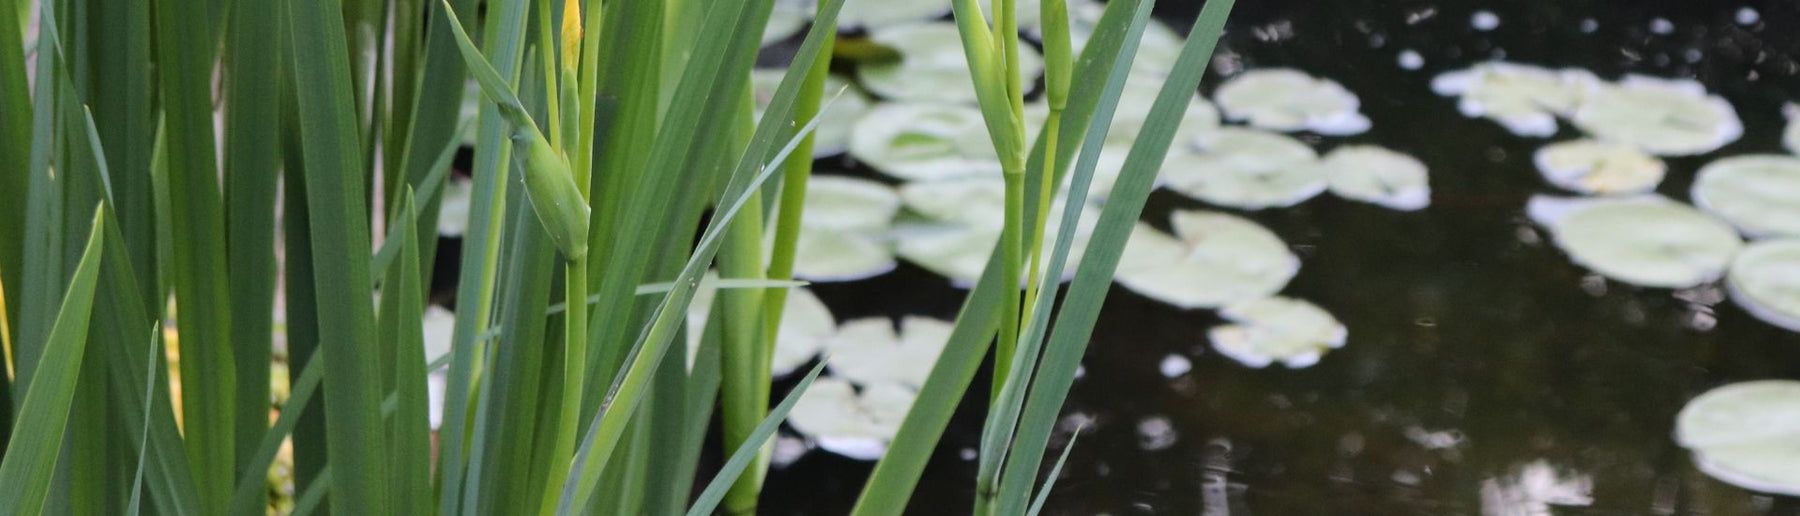 שיעור מספר 2 - הקשר בין צמחי מים לאצות - בית הובי אונליין